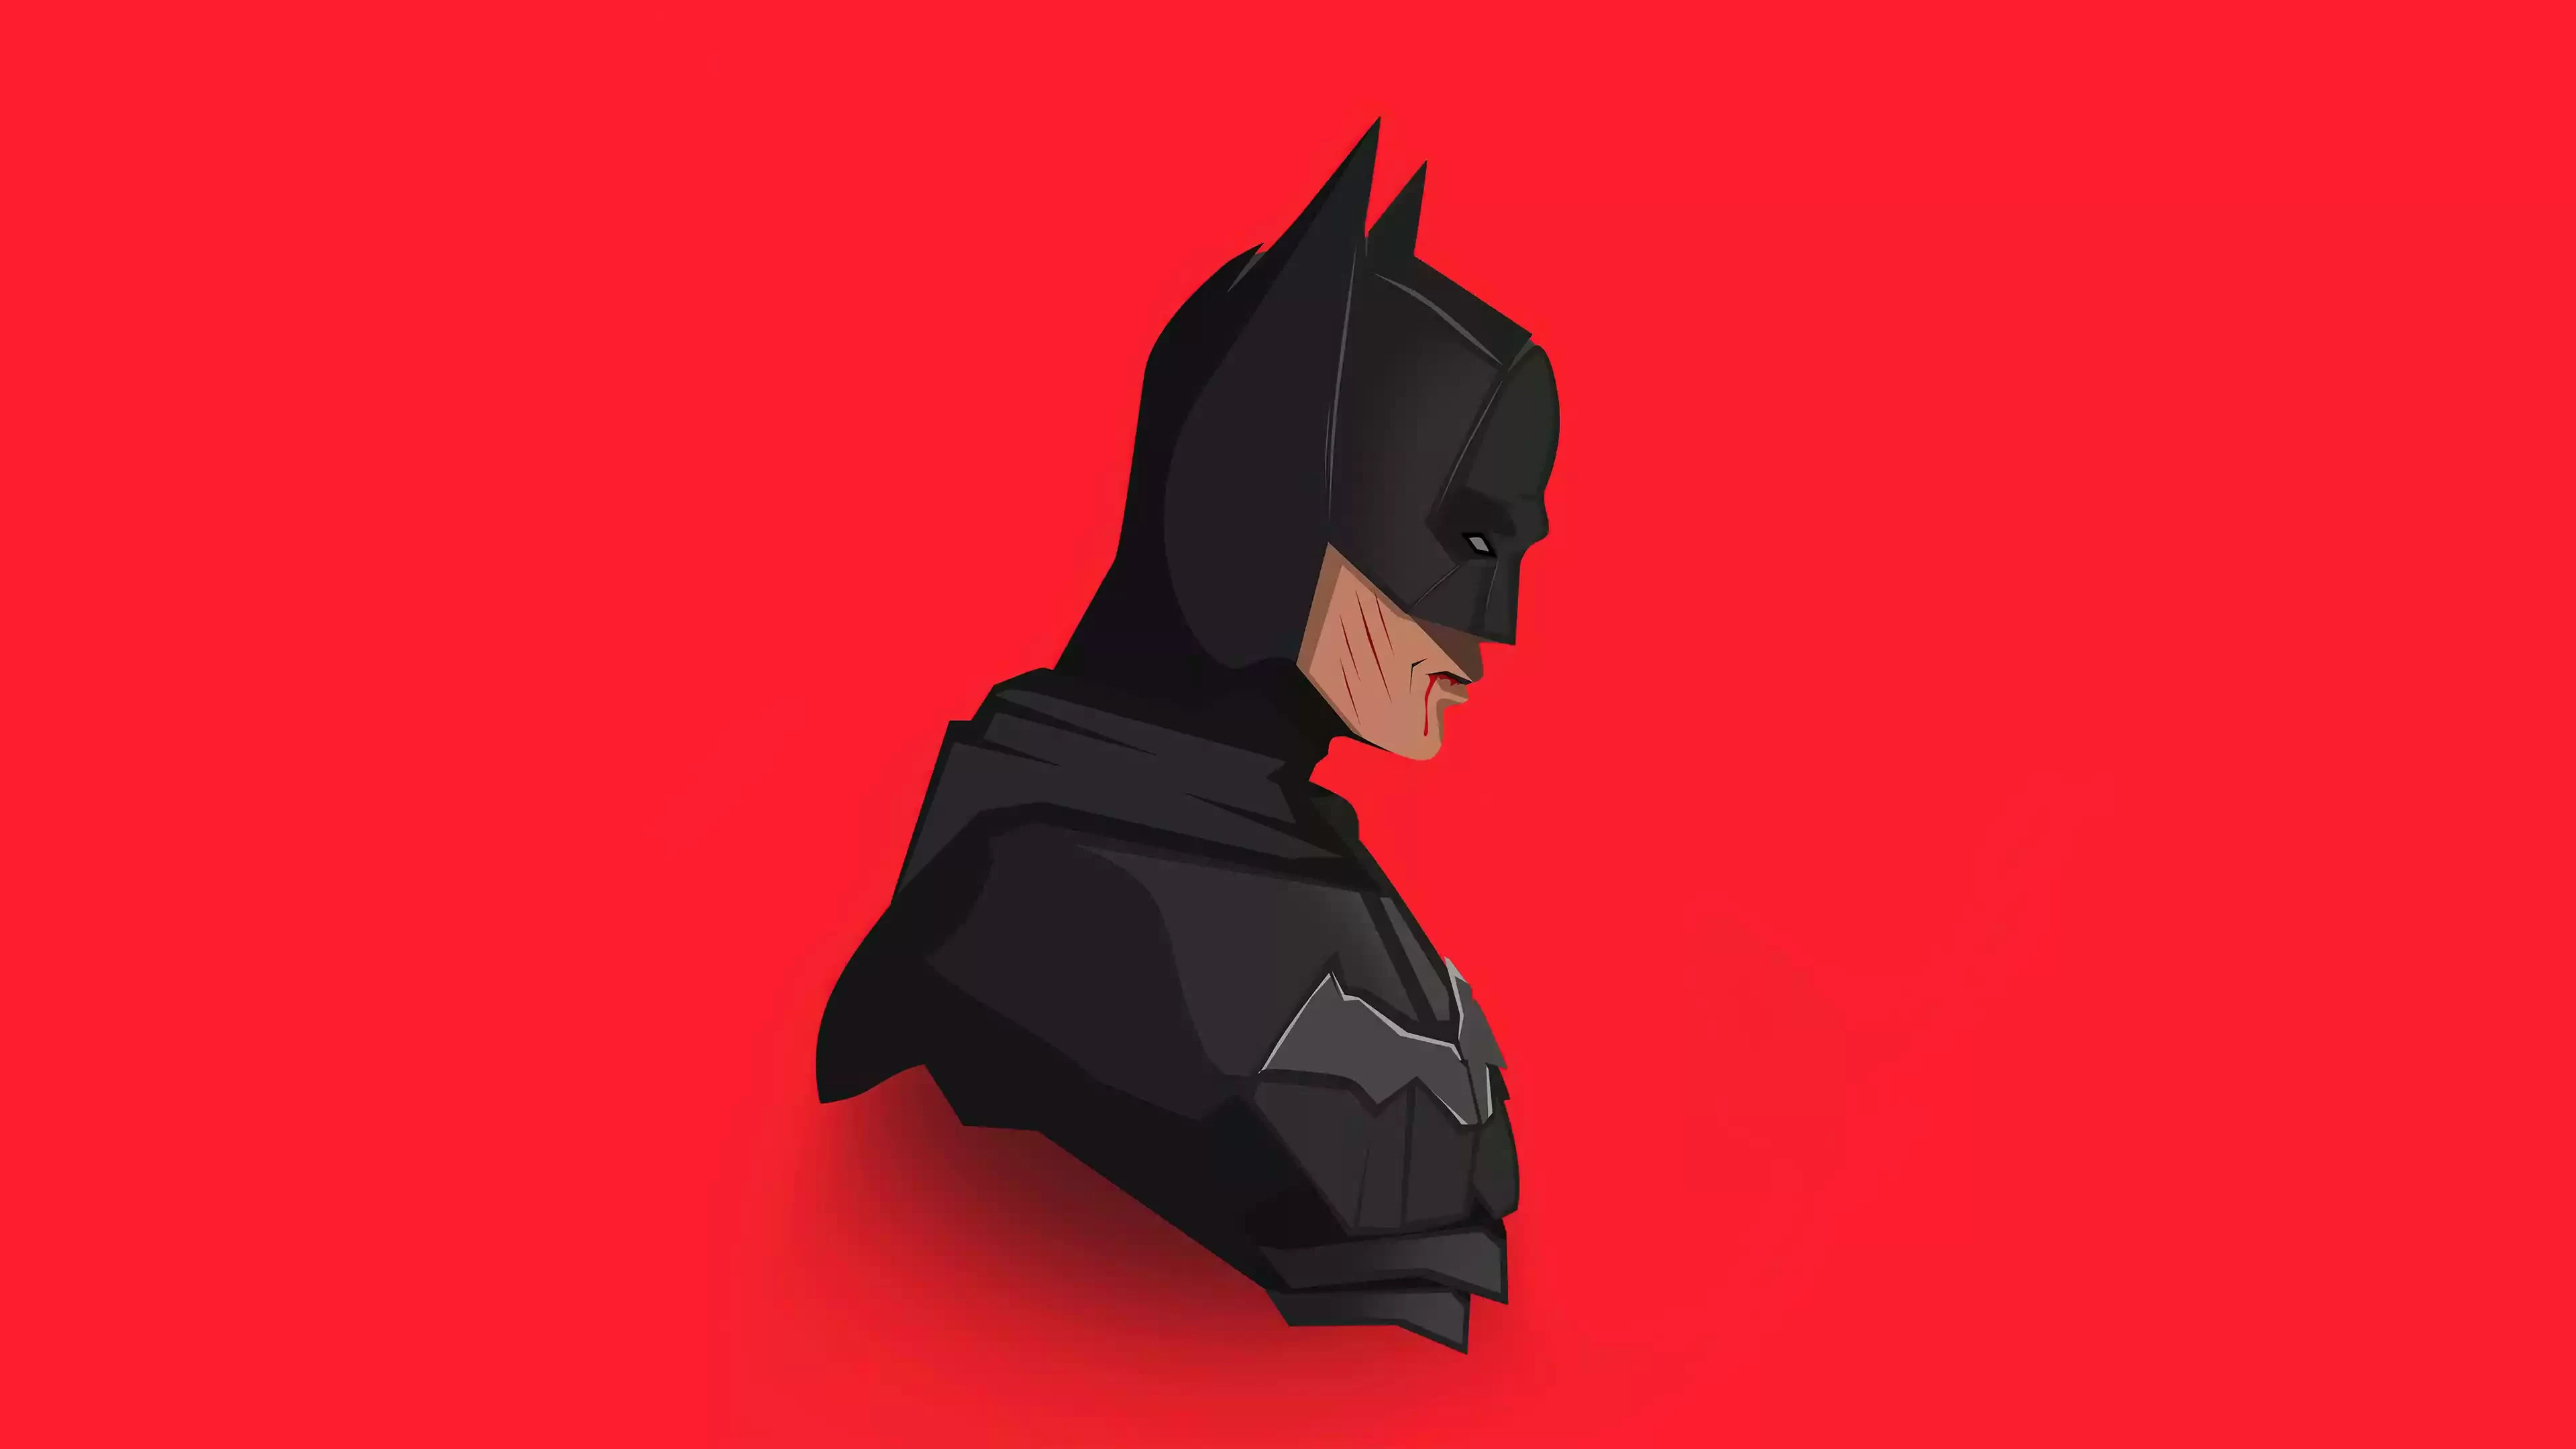 The Batman 4k Wallpaper